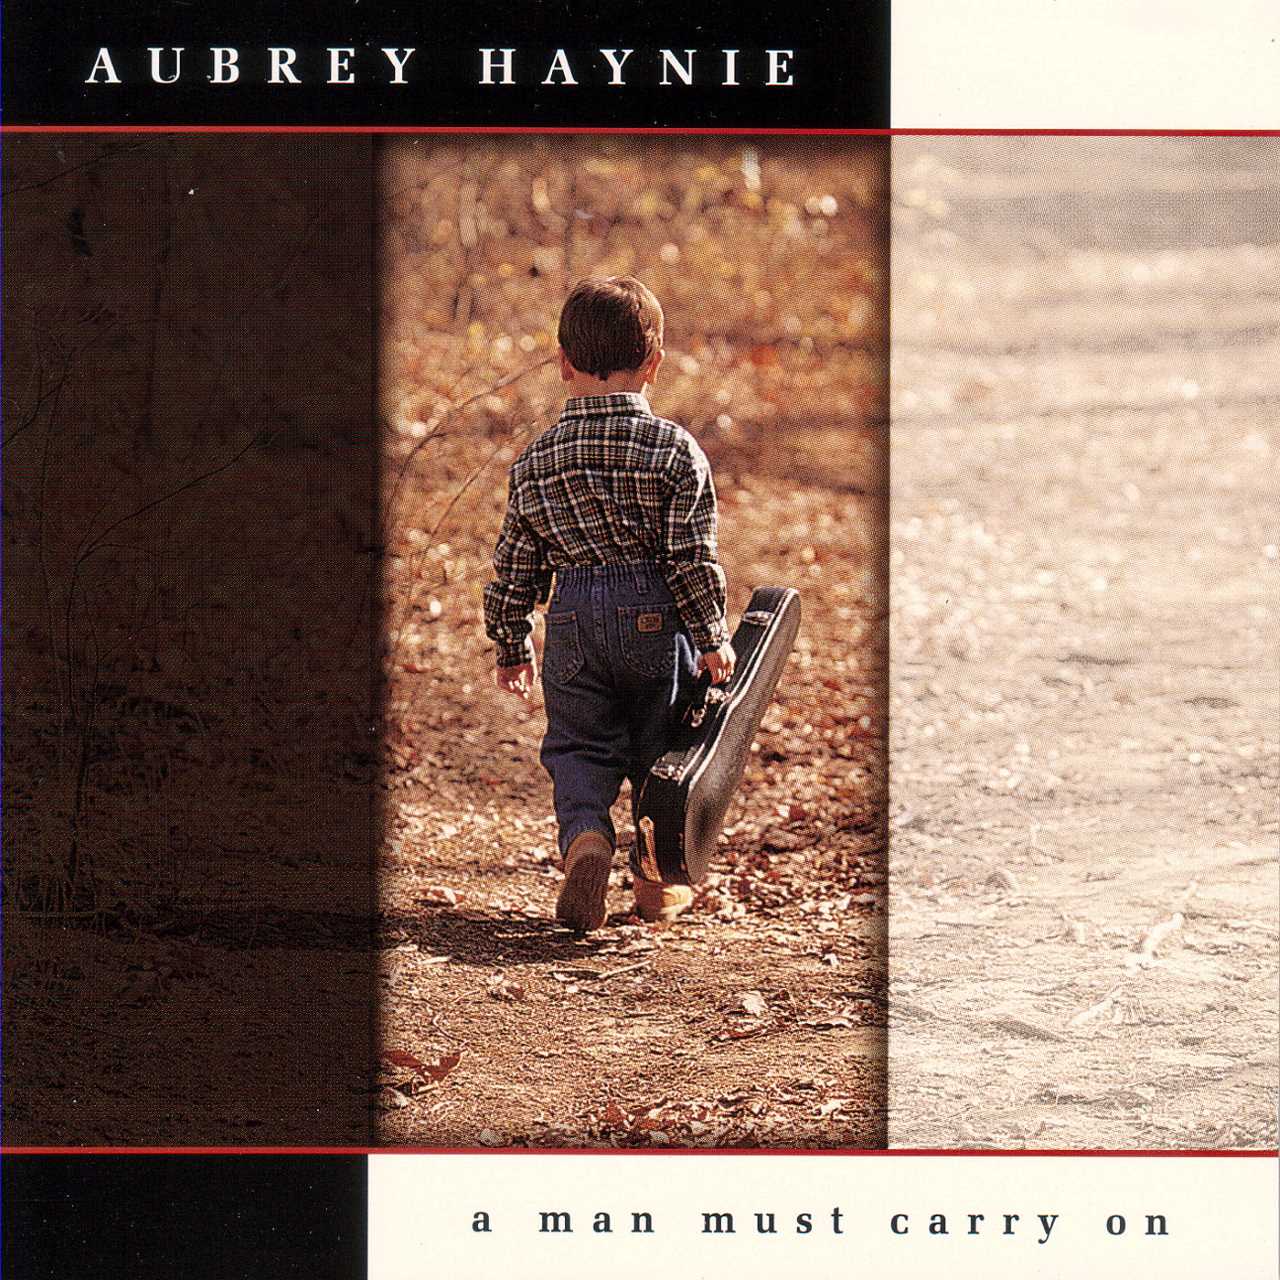 Aubrey Haynie - A Man Must Carry On cover album